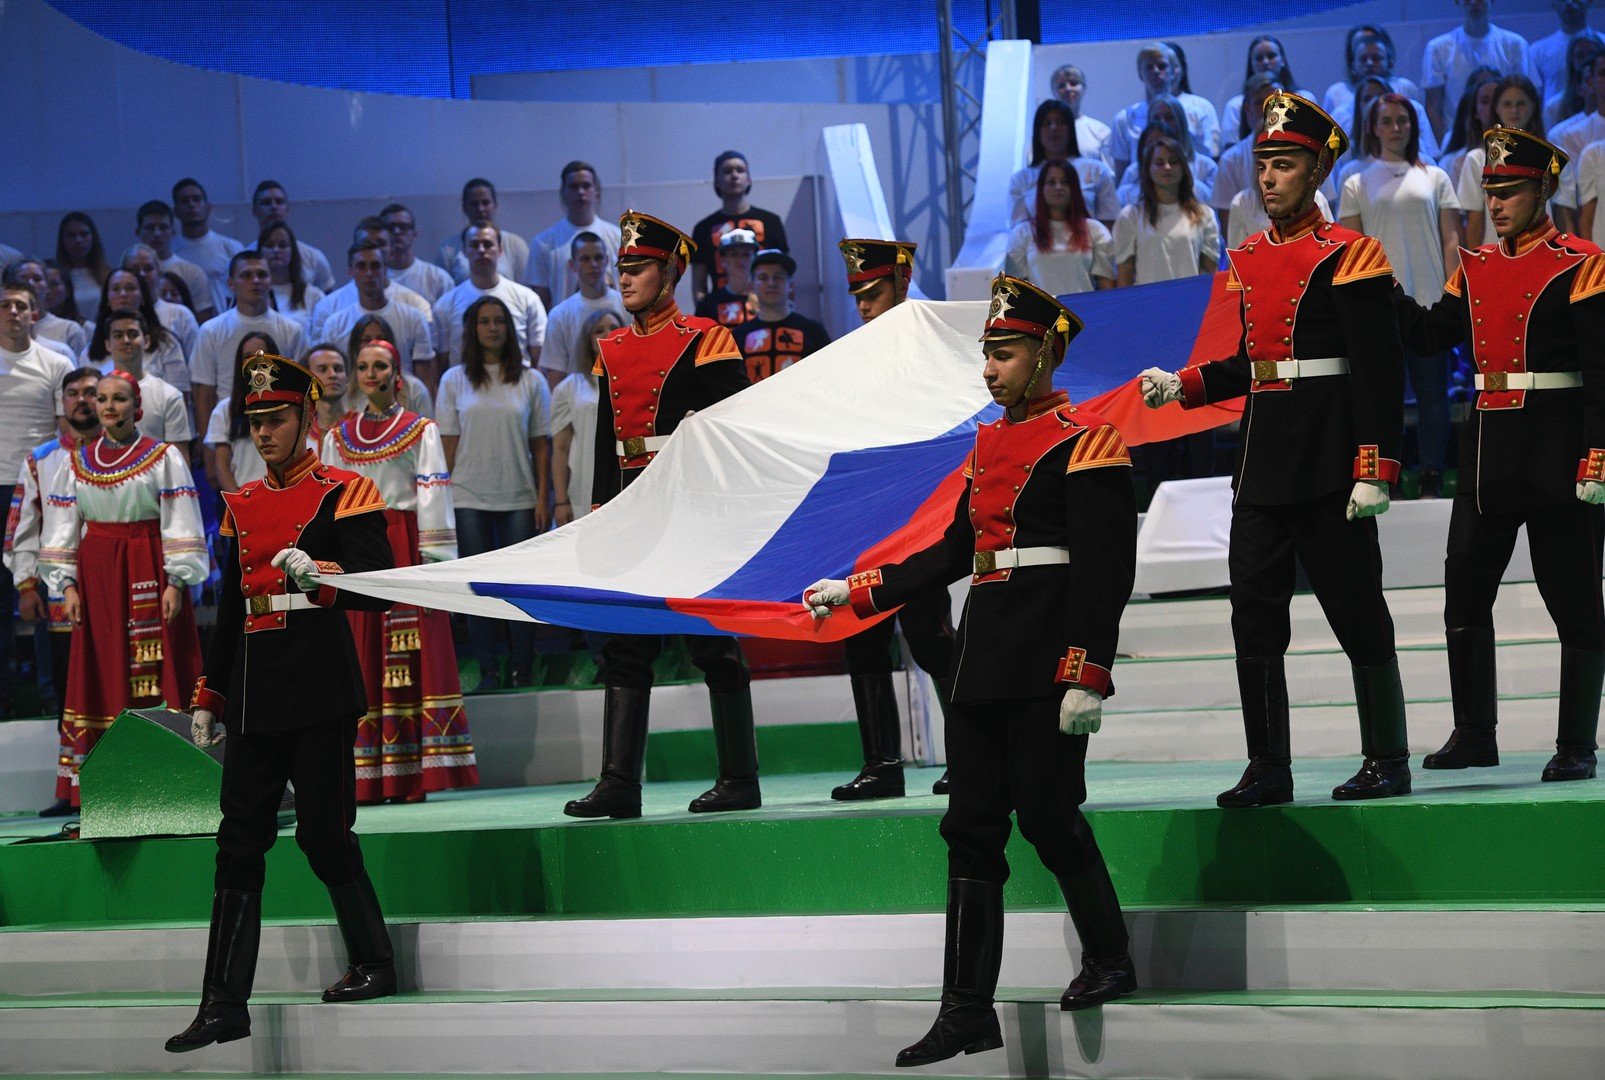 بالصور .. افتتاح دورة الألعاب البارالمبية الروسية